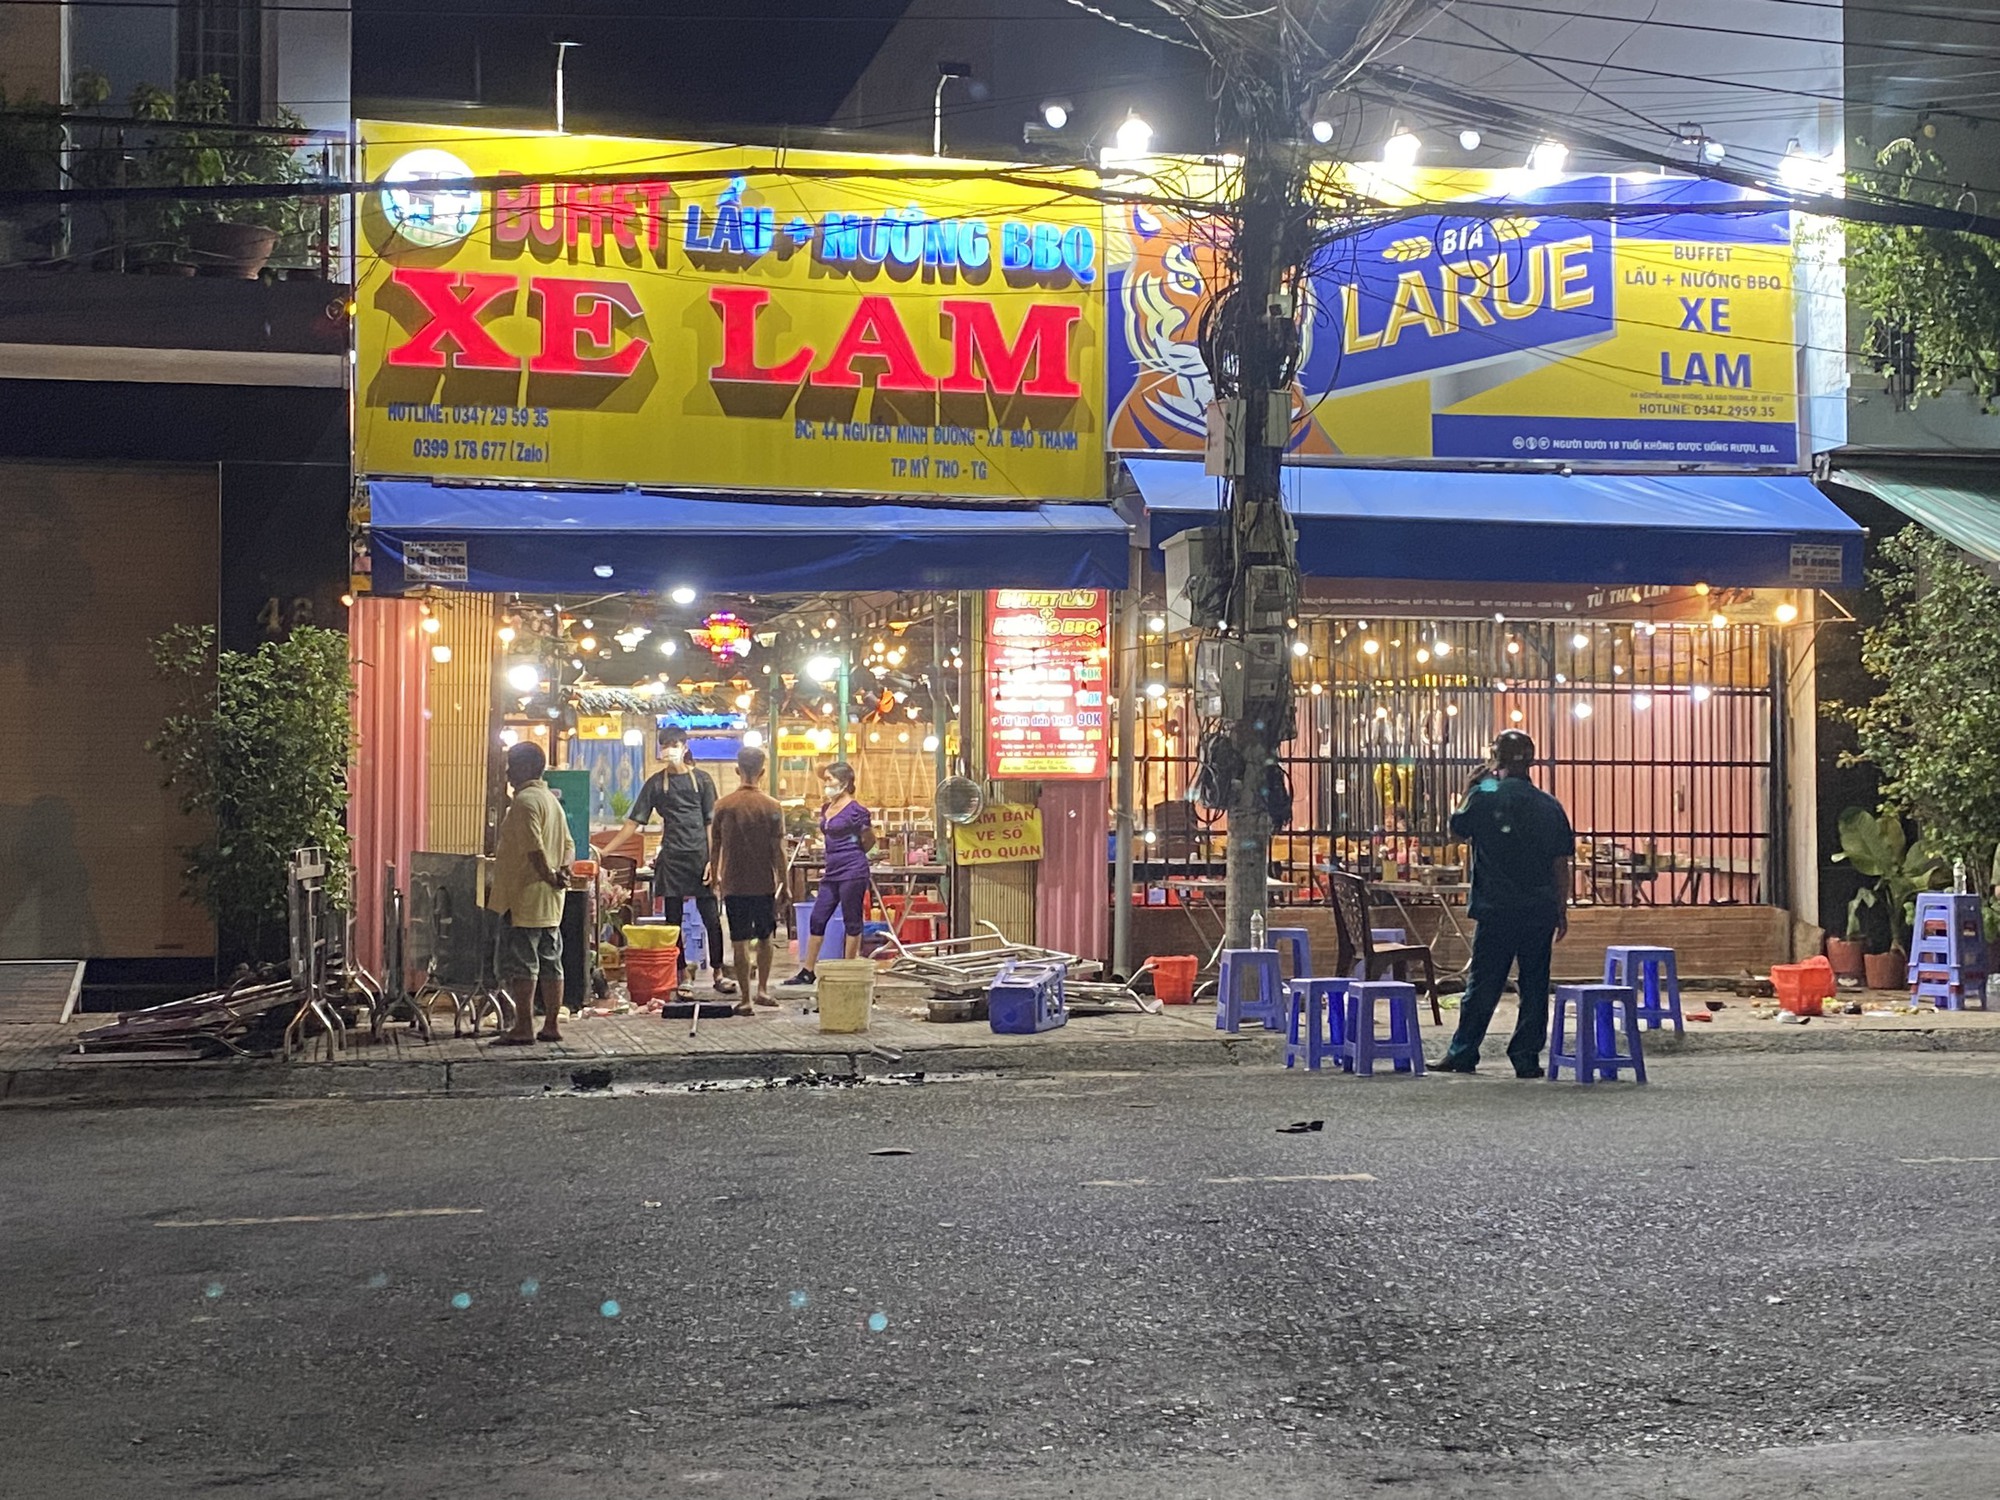 CLIP: Nổ súng tại quán lẩu Xe Lam, 1 người bị thương - Ảnh 4.